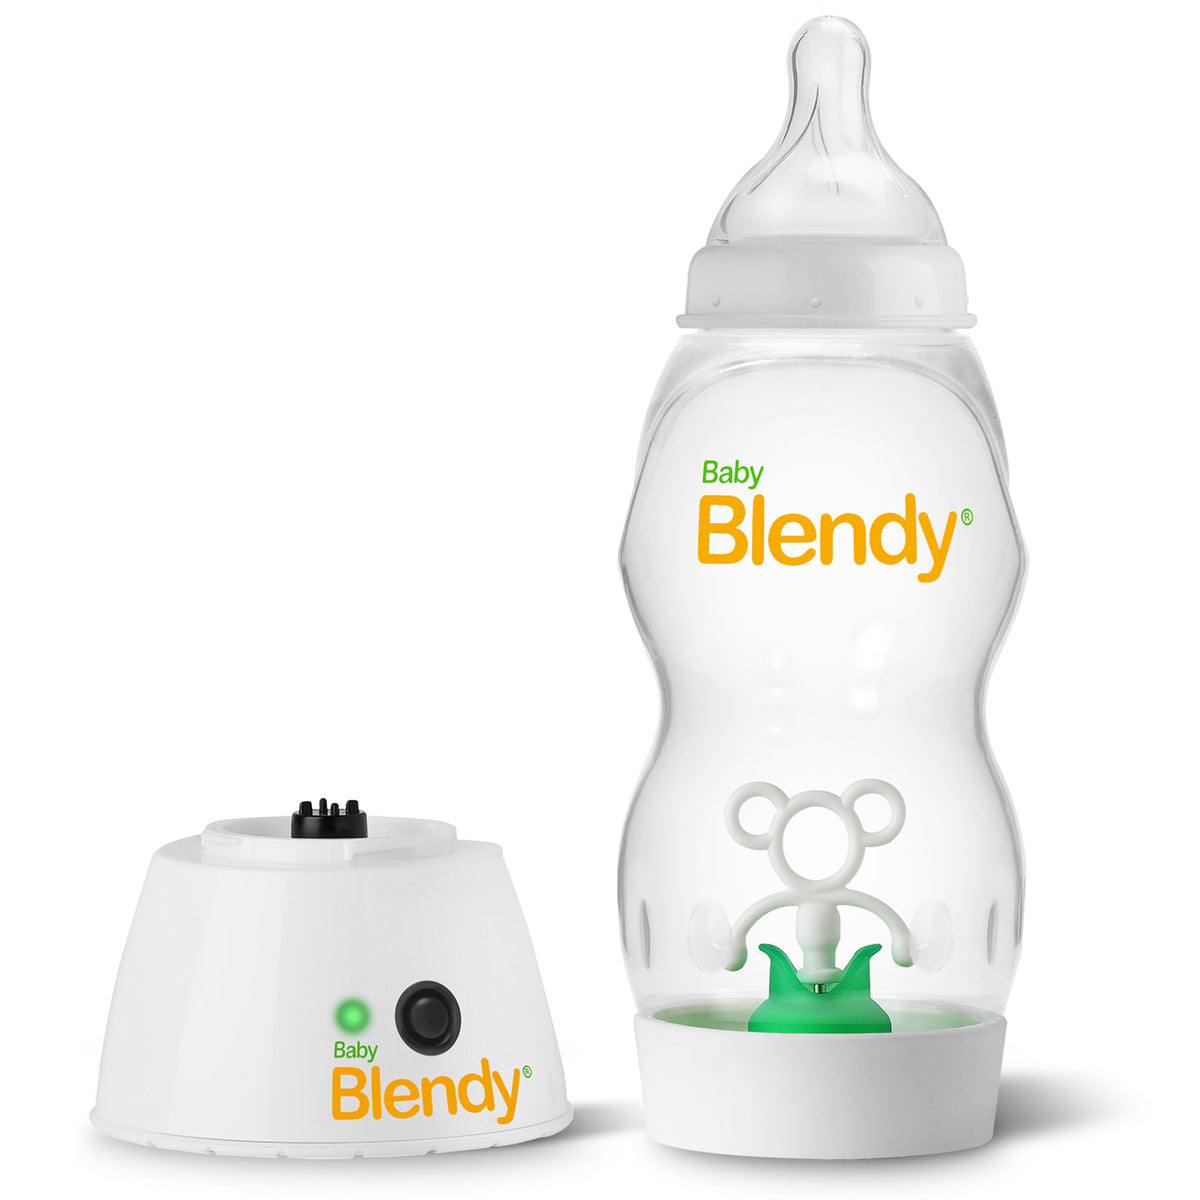 http://babyblendybottles.com/cdn/shop/products/Real-Bottle-and-Base-only-72DPI-1X1_1200x1200.jpg?v=1597089504